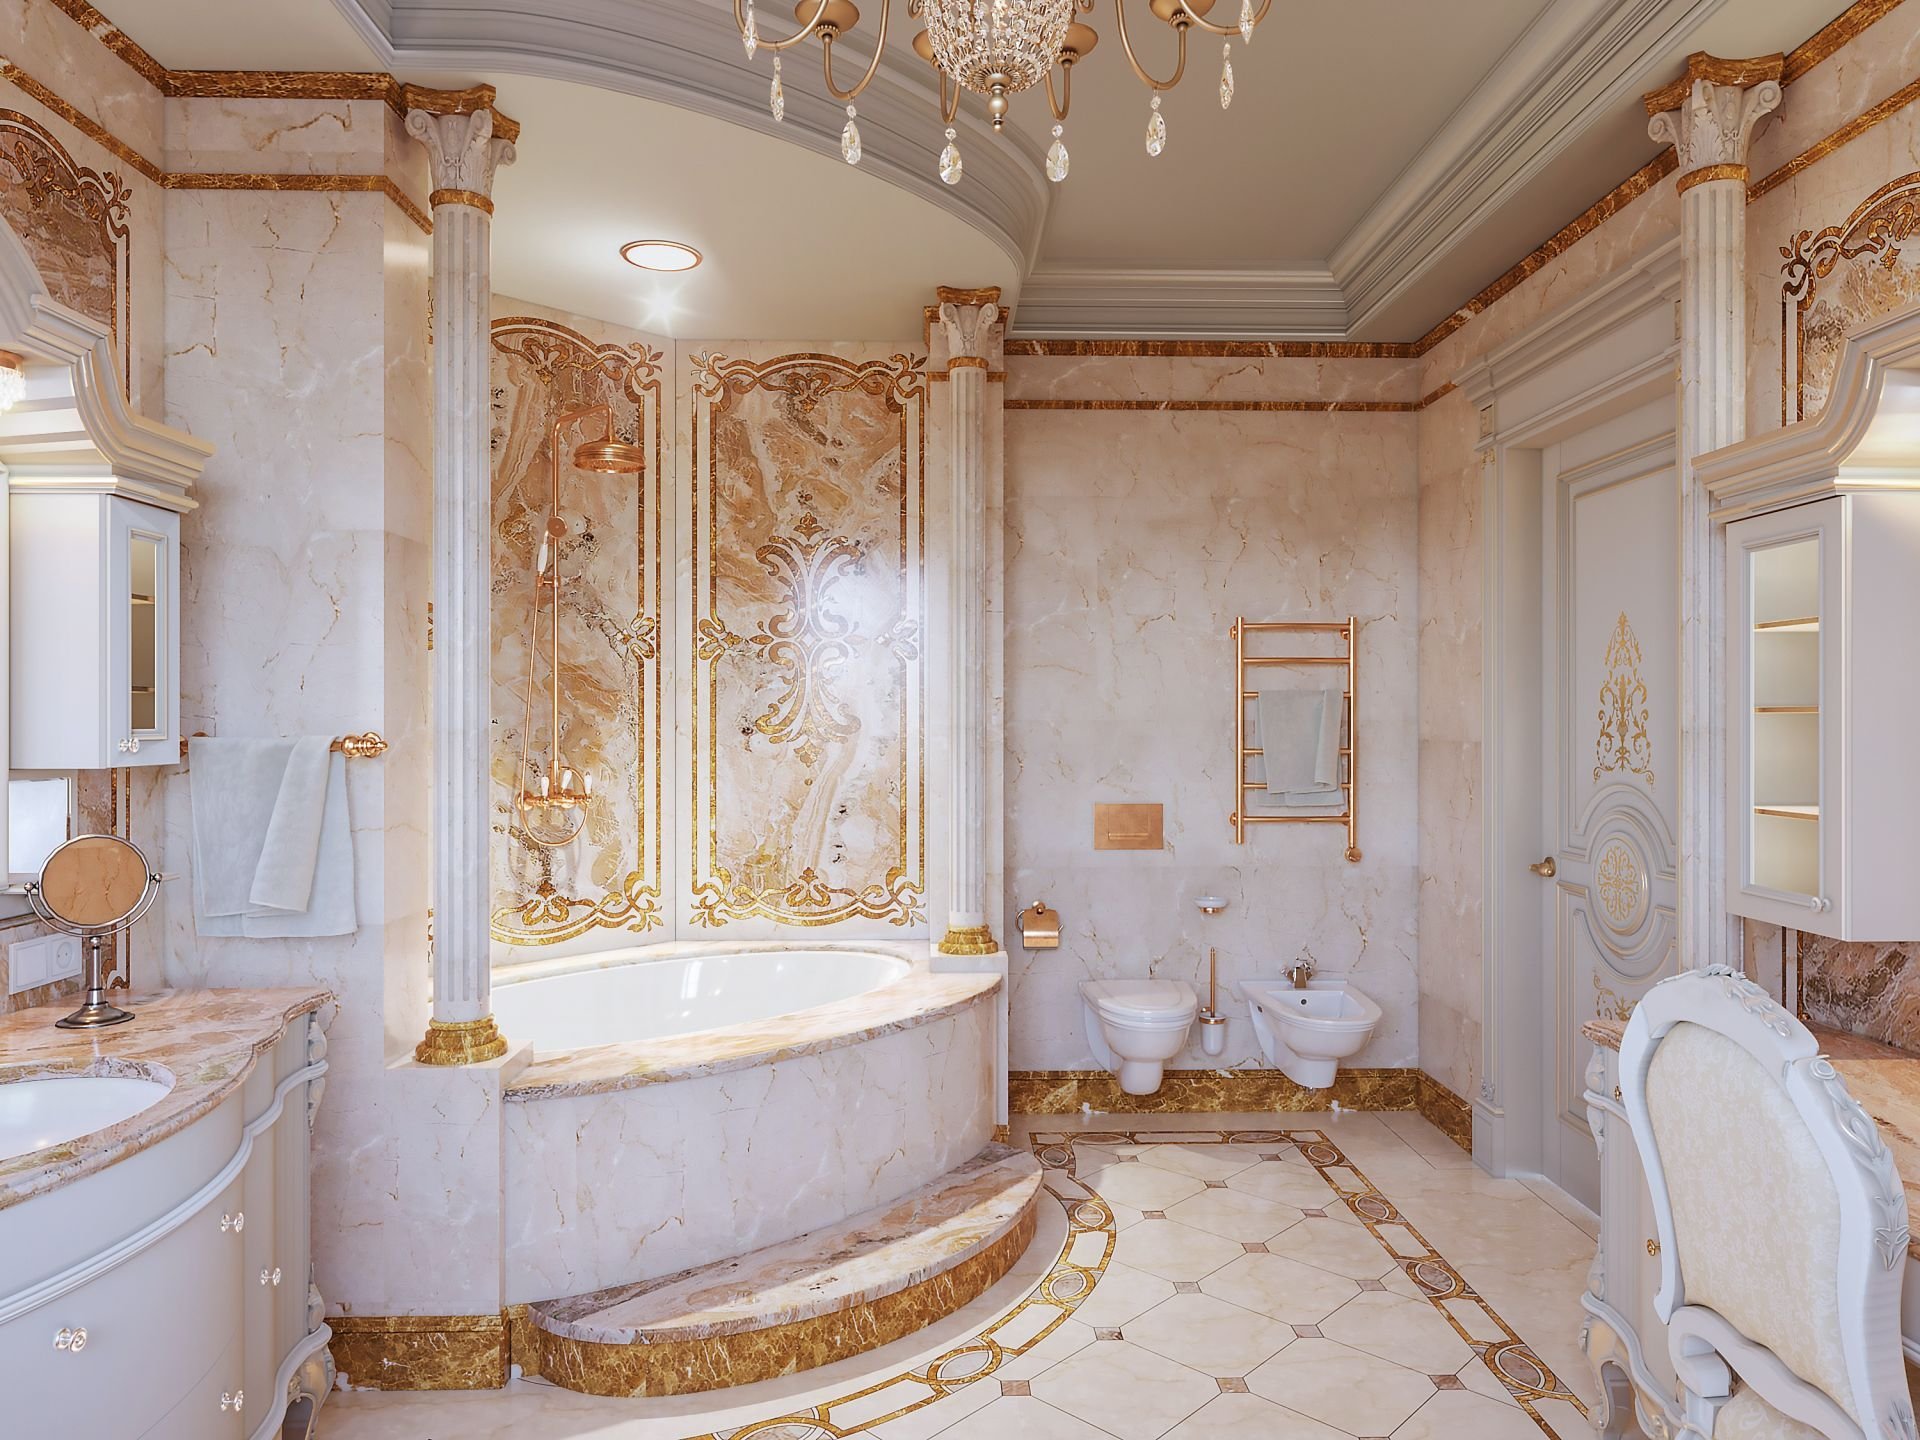 Дизайн ванной комнаты в стиле барокко фото – ванная комната в стиле барокко: фото в интерьере — green building